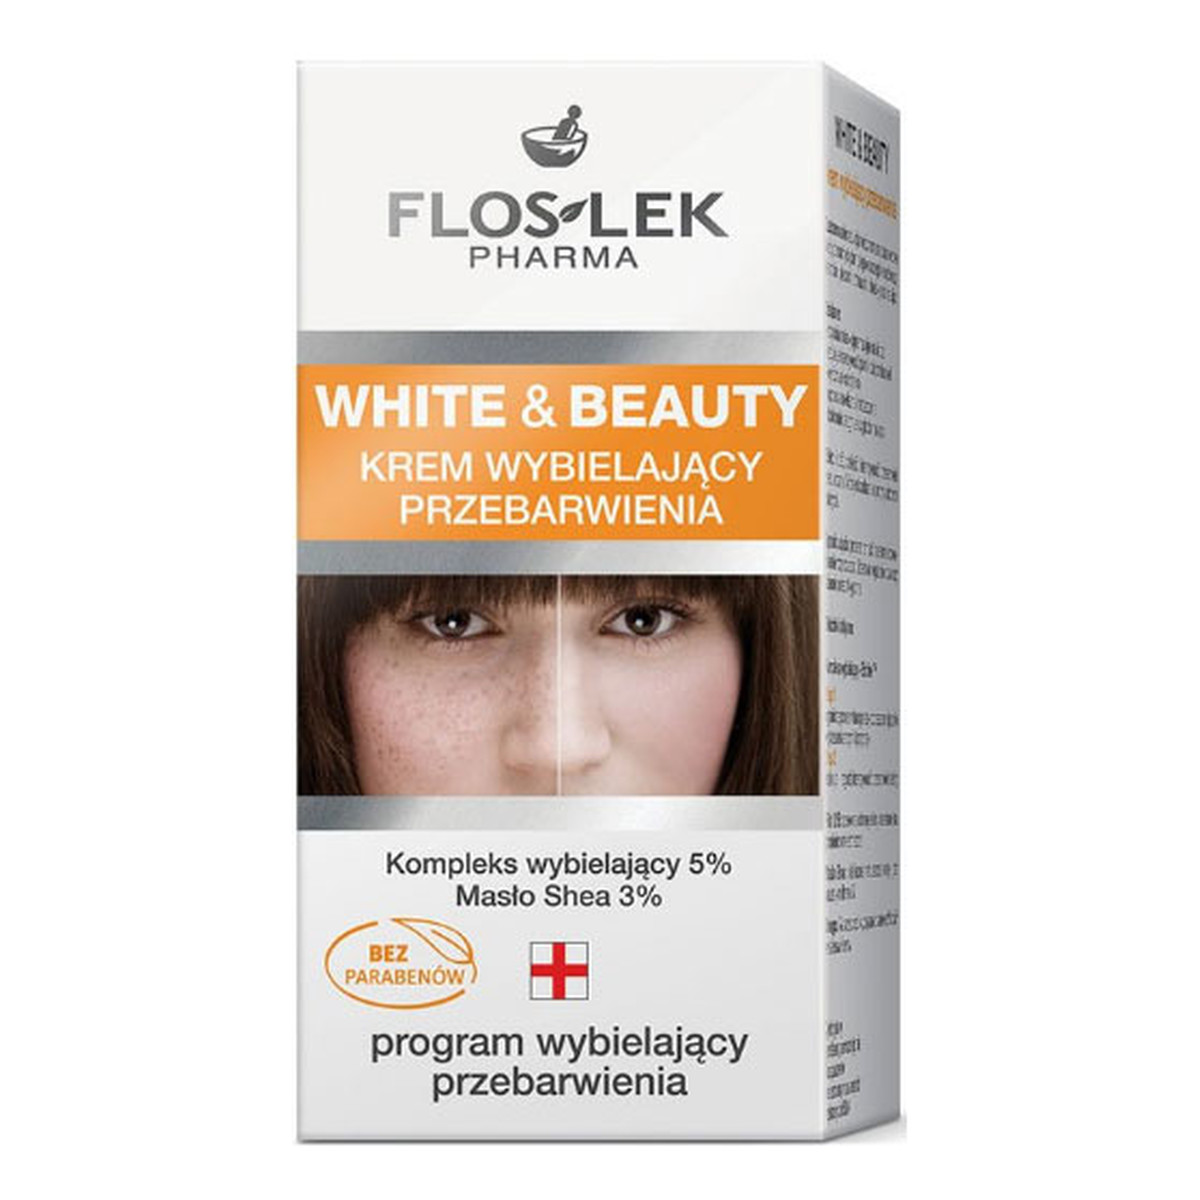 FlosLek White & Beauty Pharma Krem Wybielający Przebarwienia 50ml